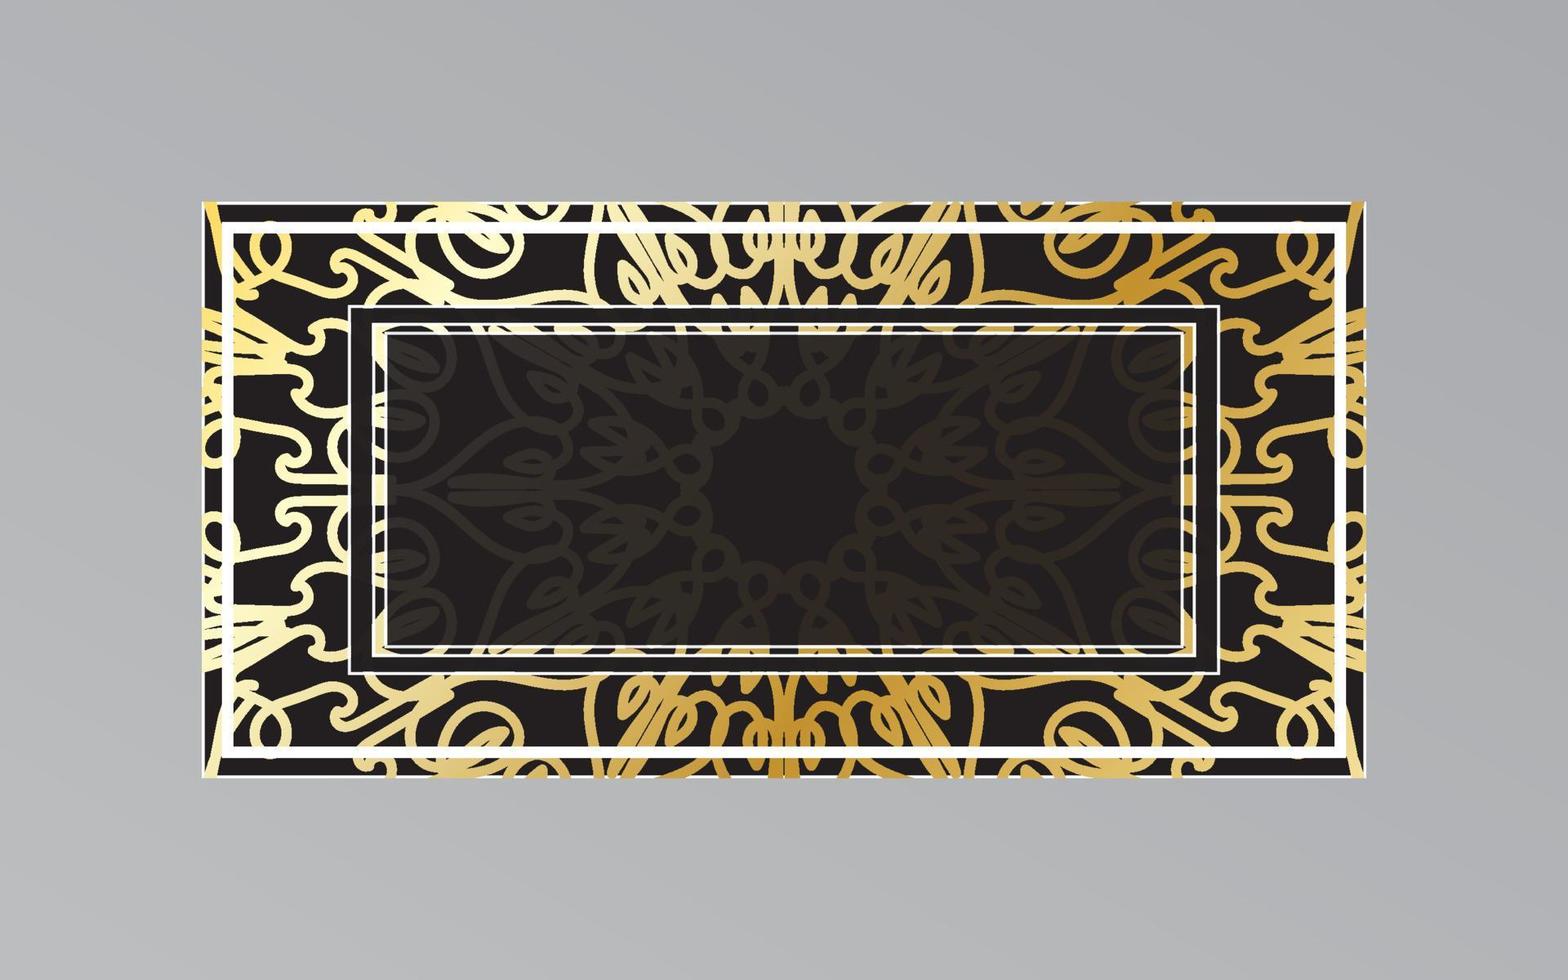 gouden frame op de muur in mandala-stijl vector